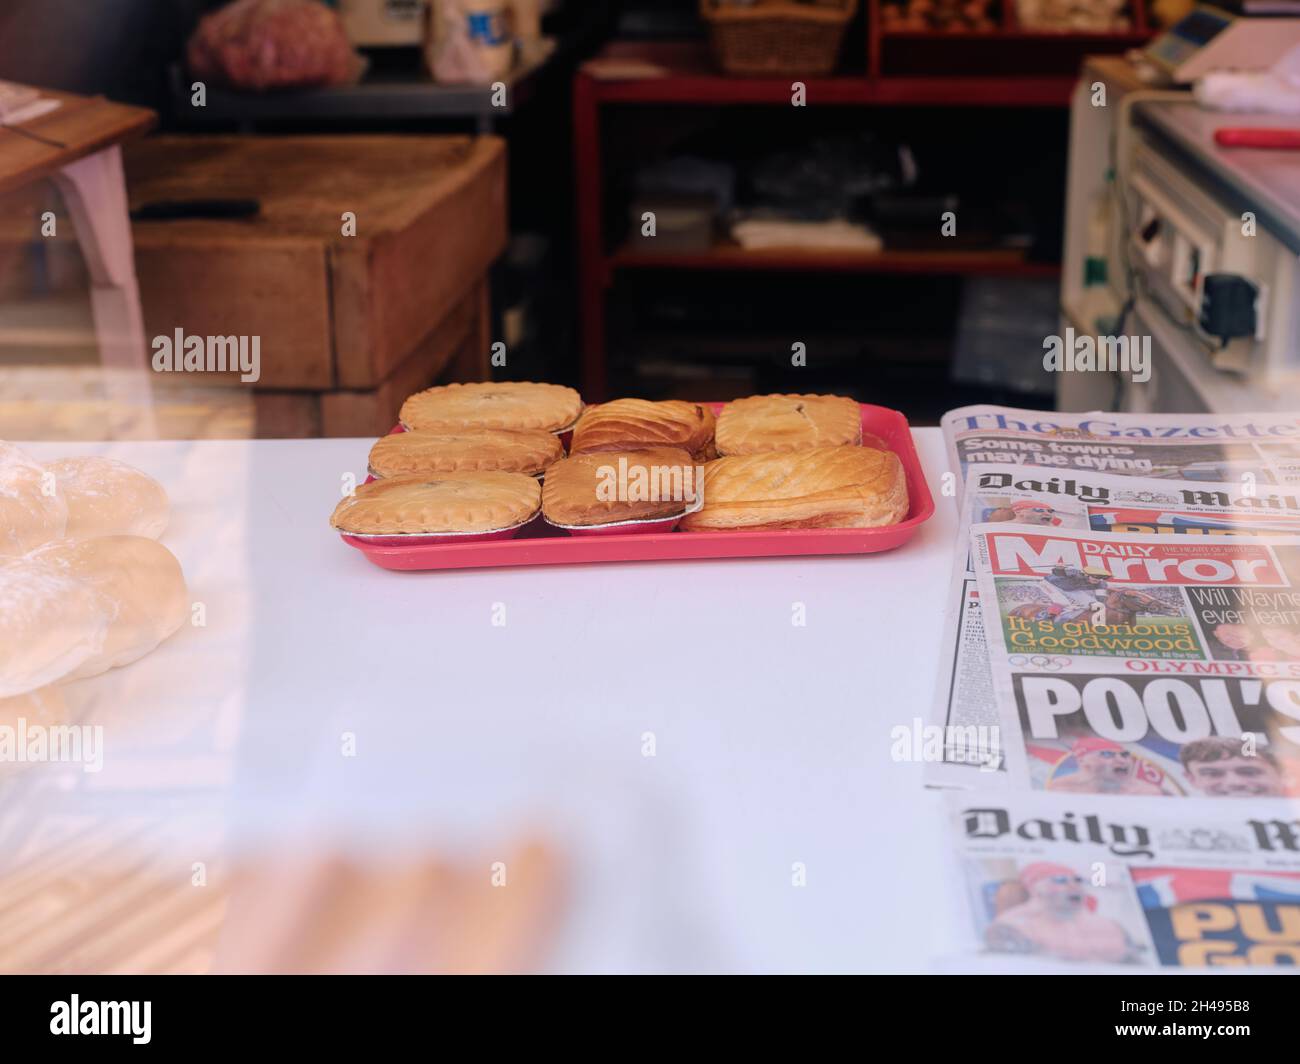 Pies n Papers - britischer Alltag - frisch gebackene Pies und Zeitungen in einer minimalen Schaufenster-Anzeige in Nordengland - Pie Food Zeitung Stockfoto